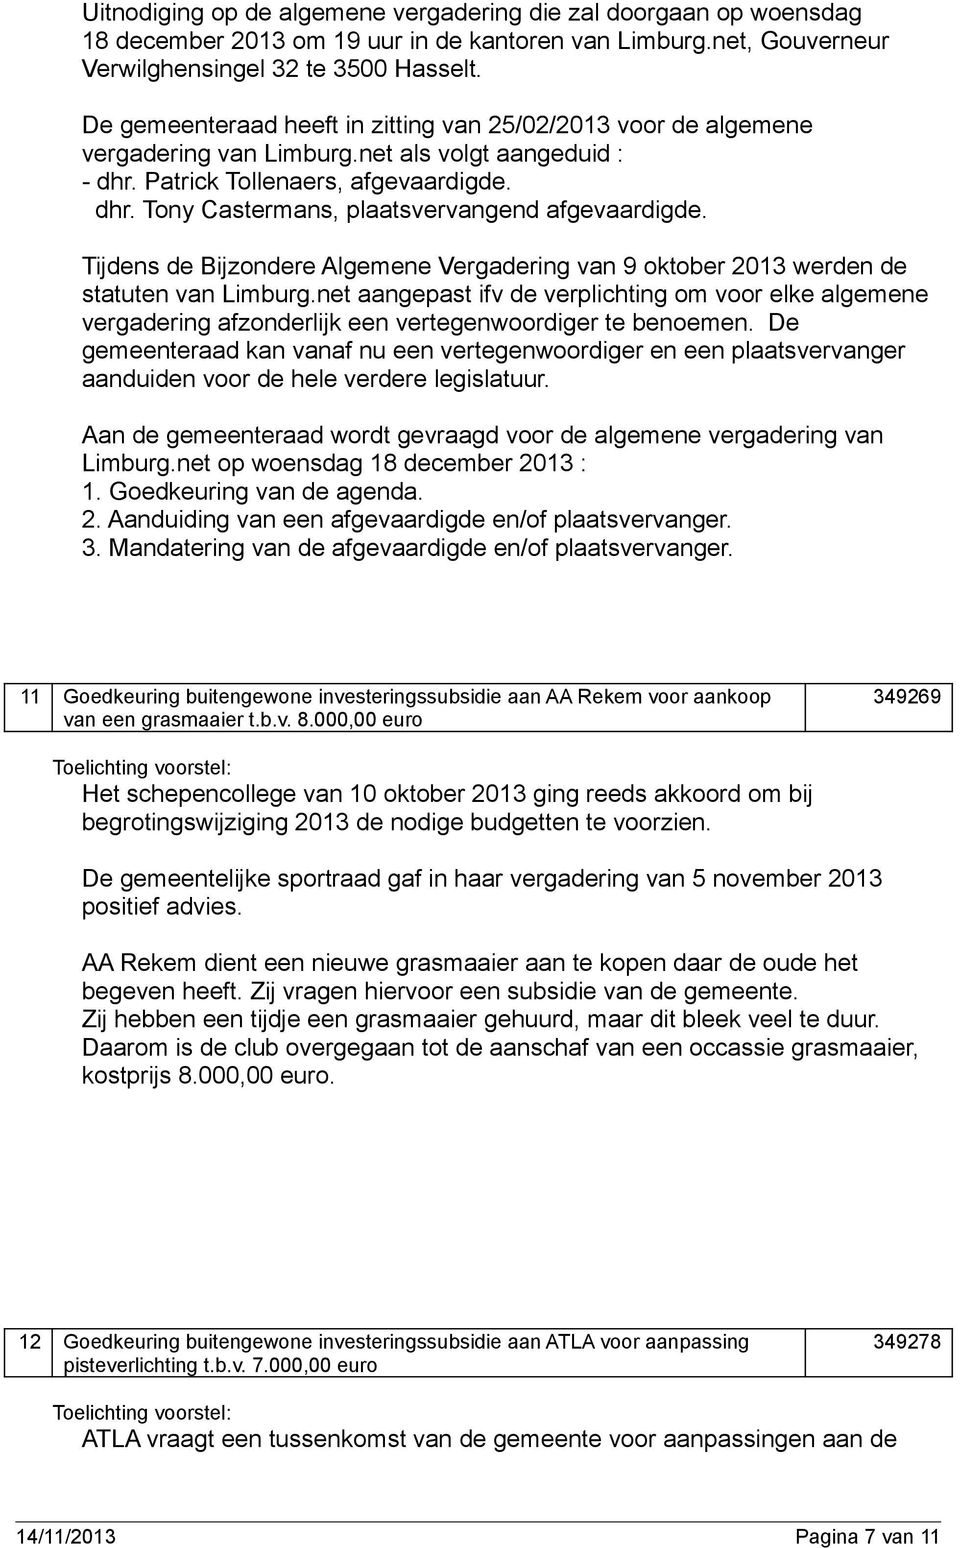 Tijdens de Bijzondere Algemene Vergadering van 9 oktober 2013 werden de statuten van Limburg.